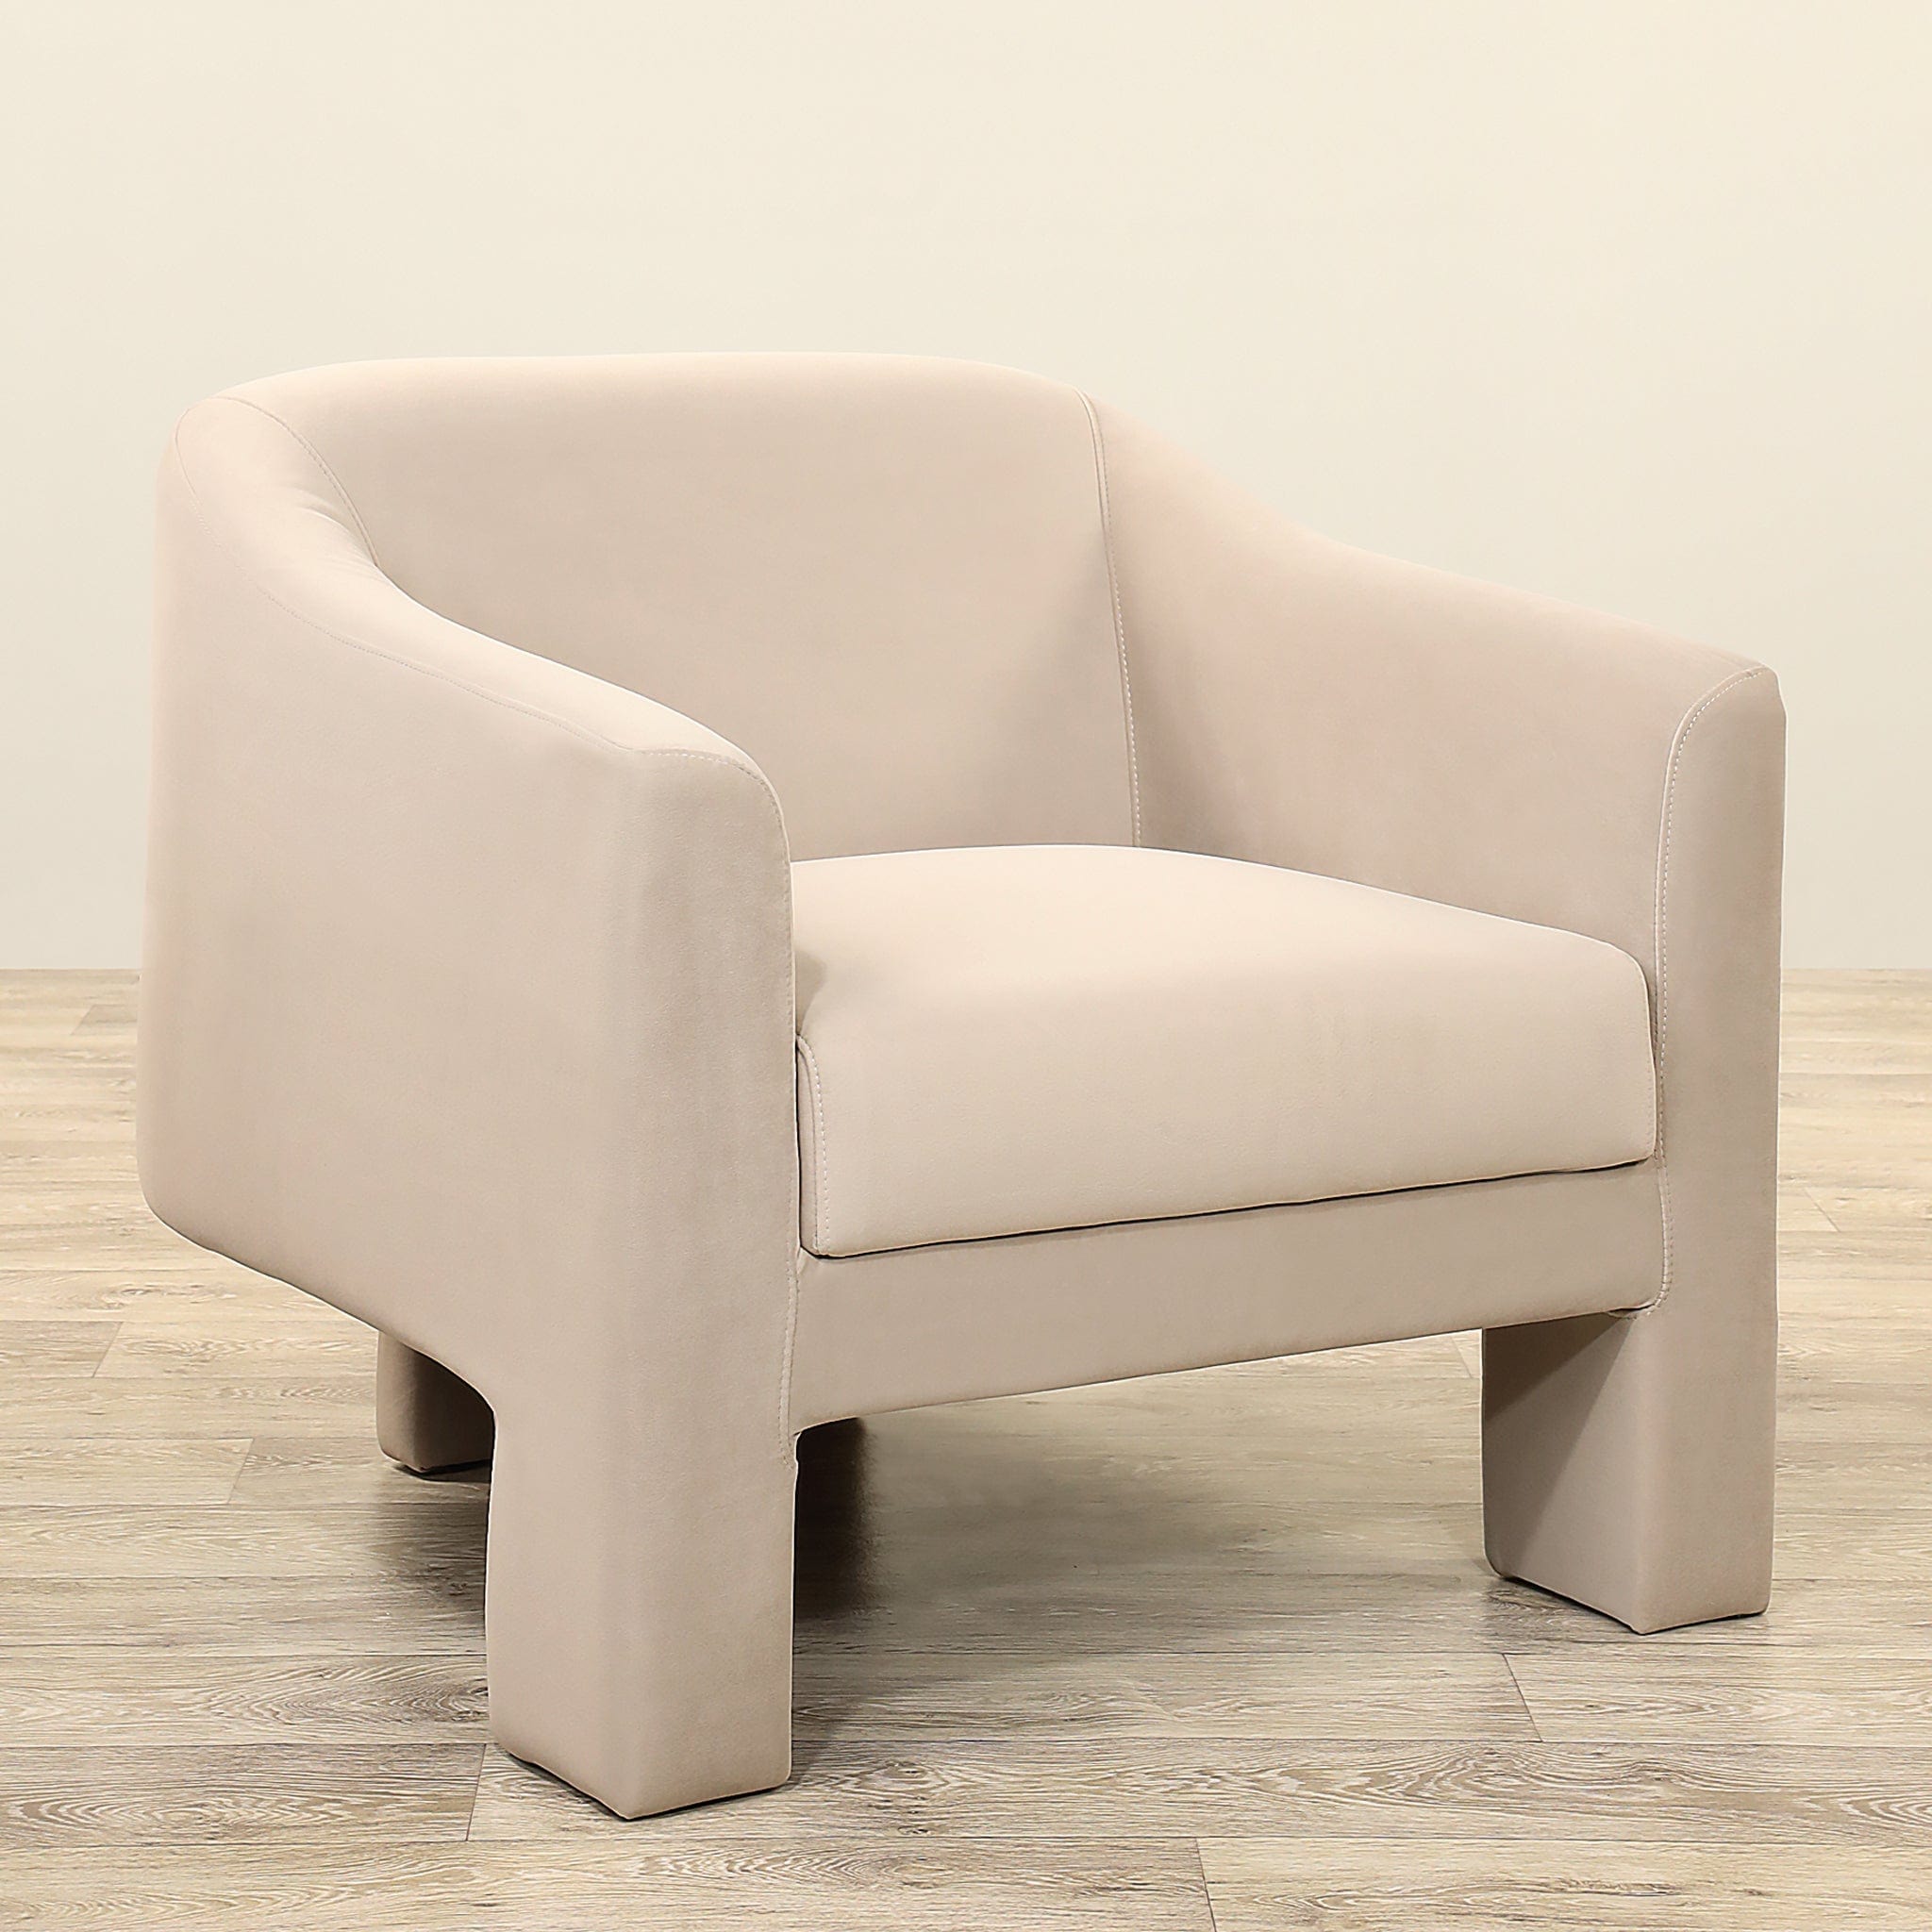 Berlin <br>Armchair Lounge Chair - Bloomr